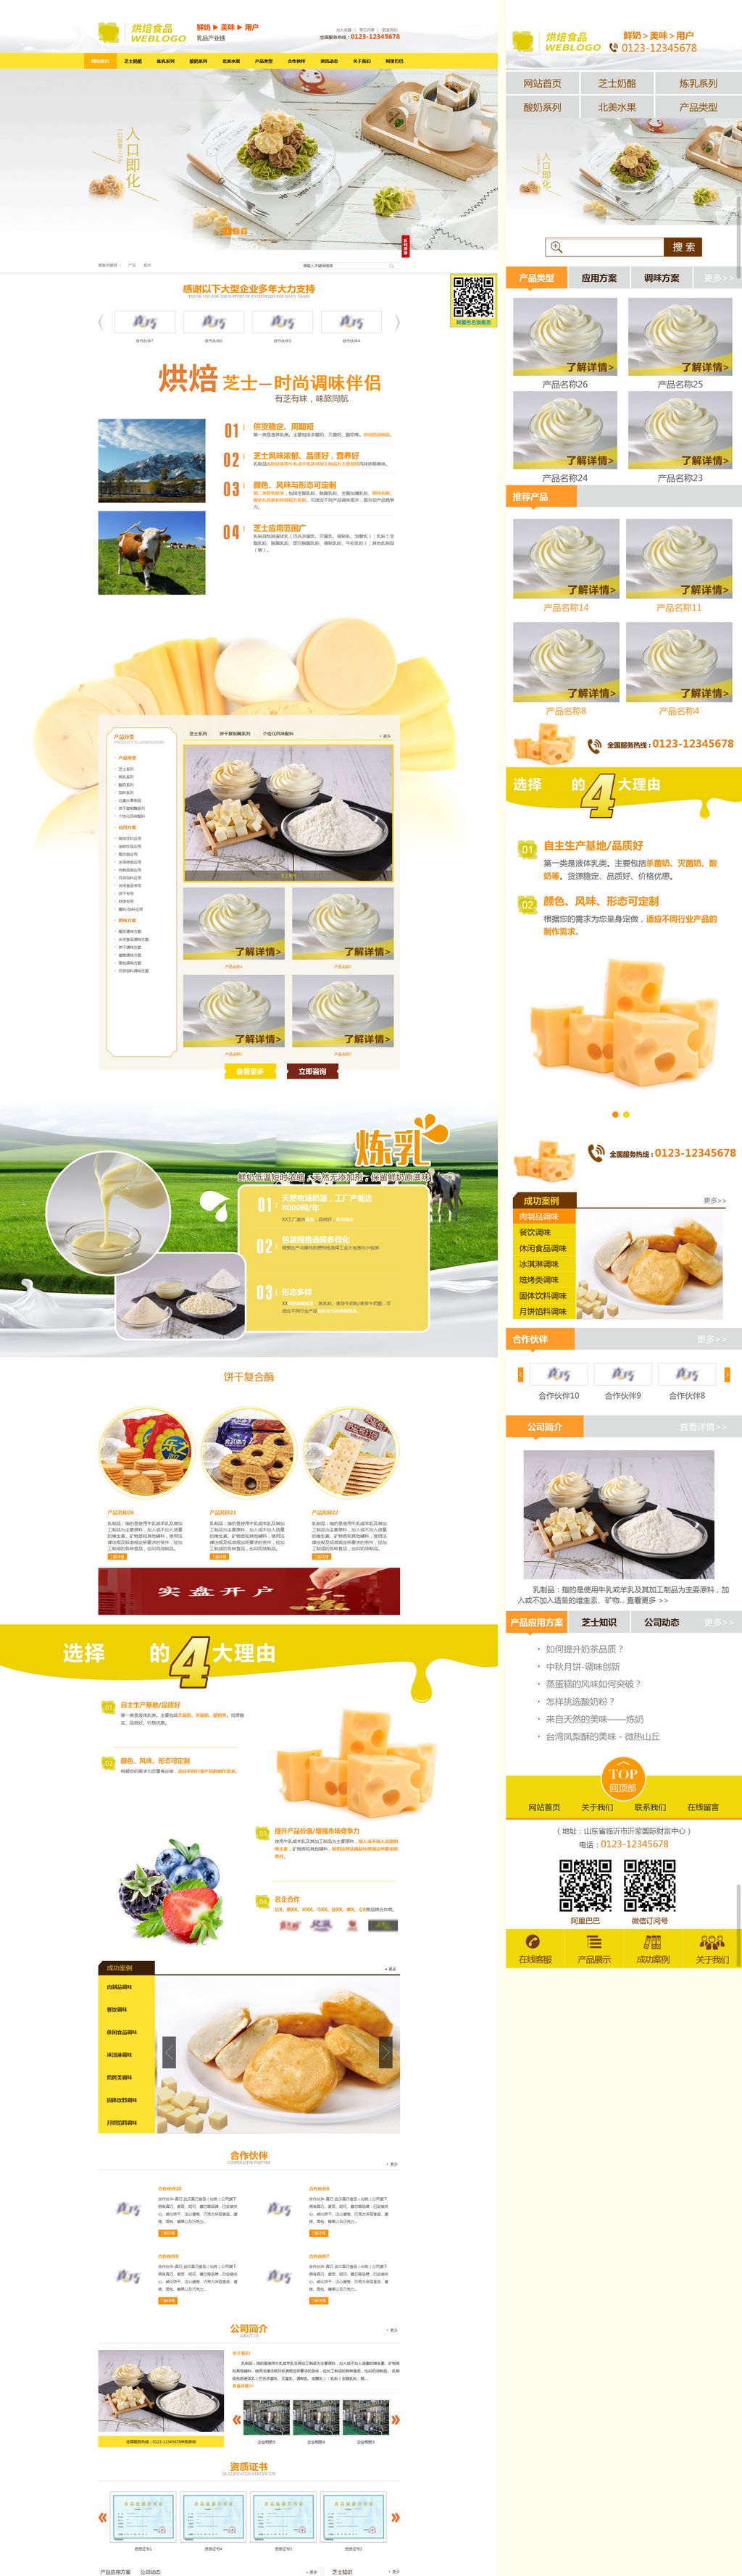 大气营销型橙色烘焙乳酪炼乳食品网站Wordpress企业模板(响应式手机站)截图